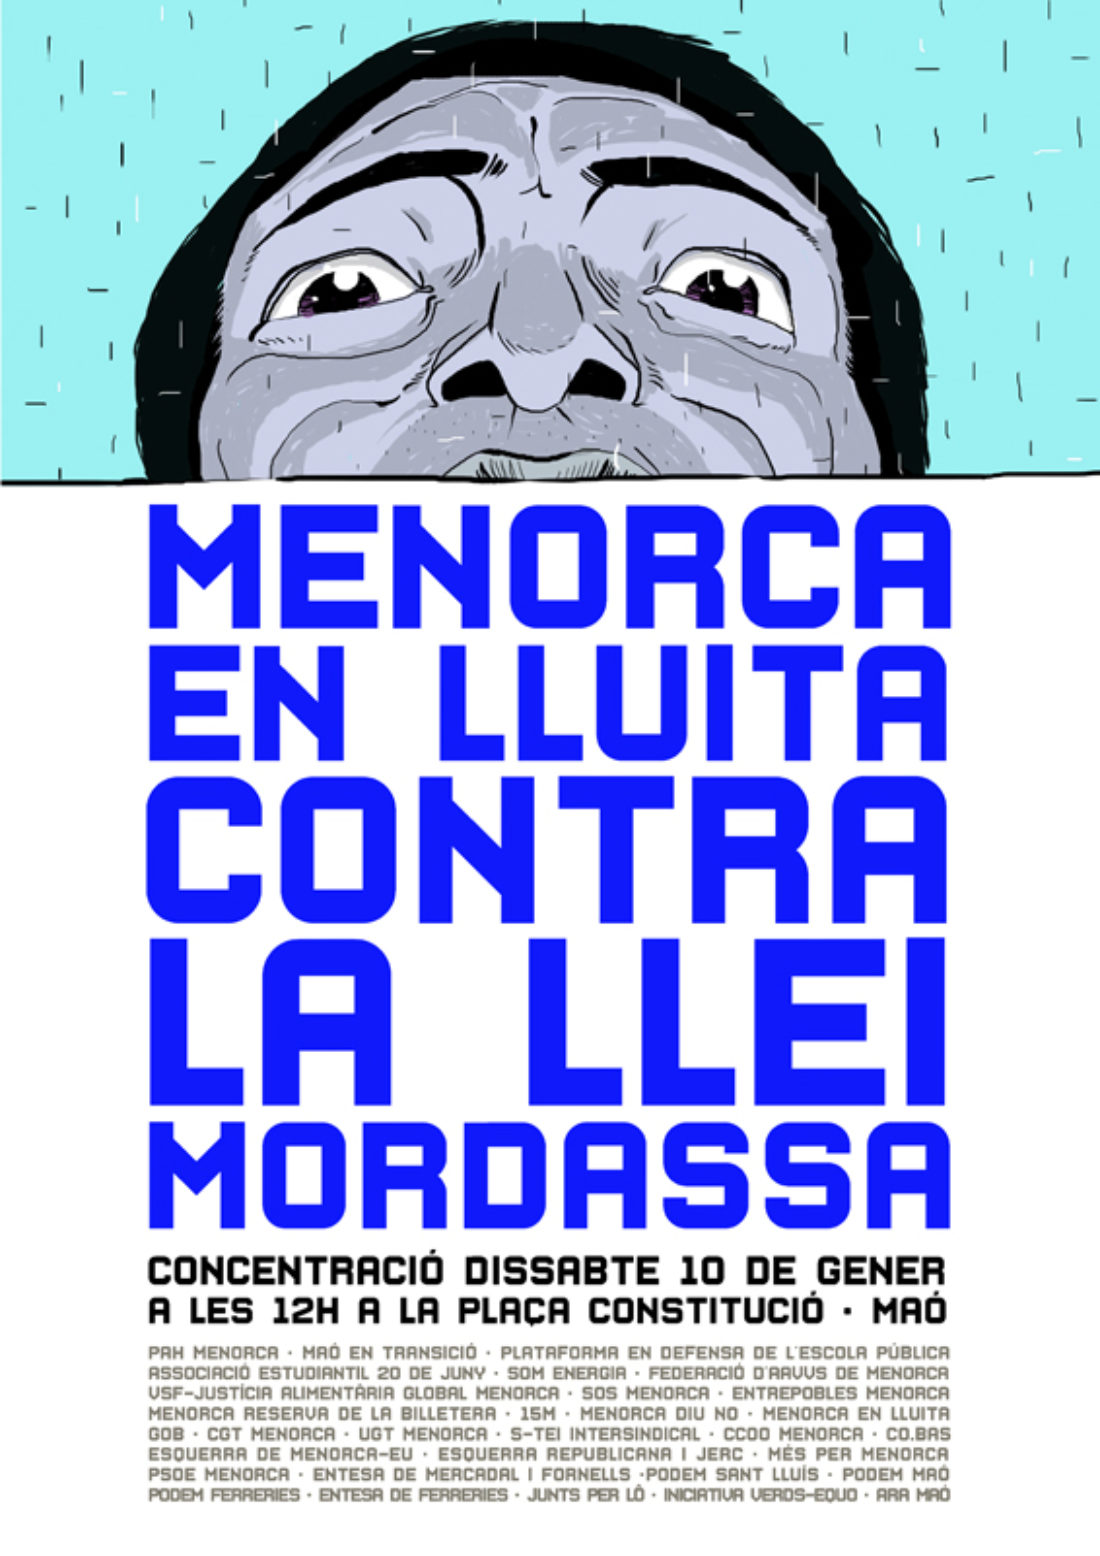 10-E: Menorca en lucha contra la Ley Mordaza